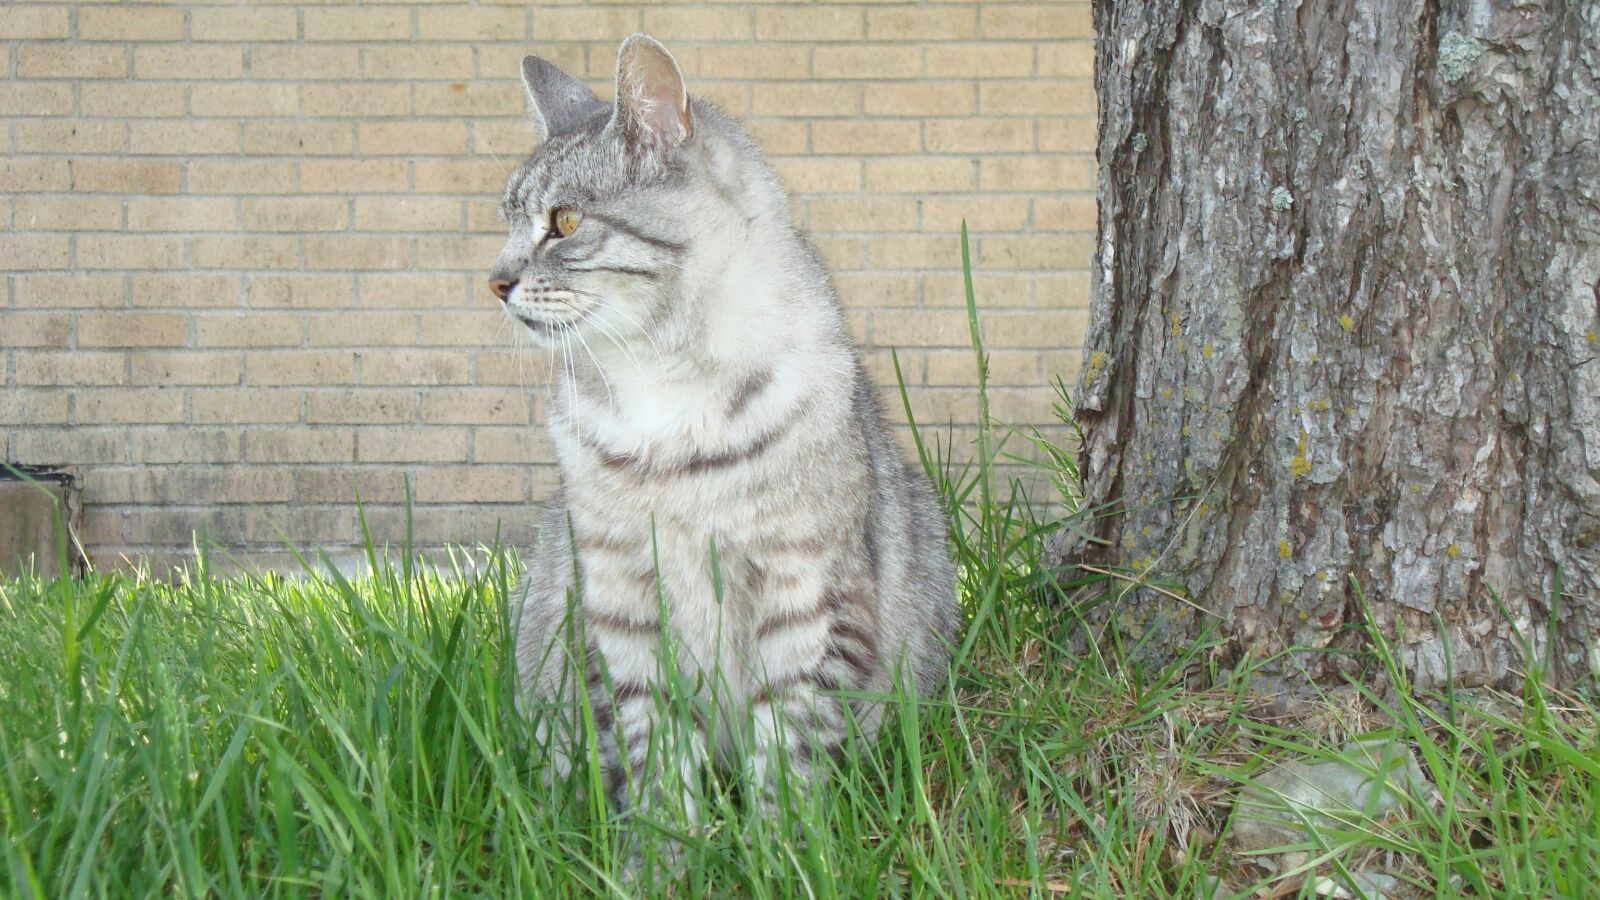 Sony Cyber-shot DSC-W120 sample photo. Cat, feline, mammal photography